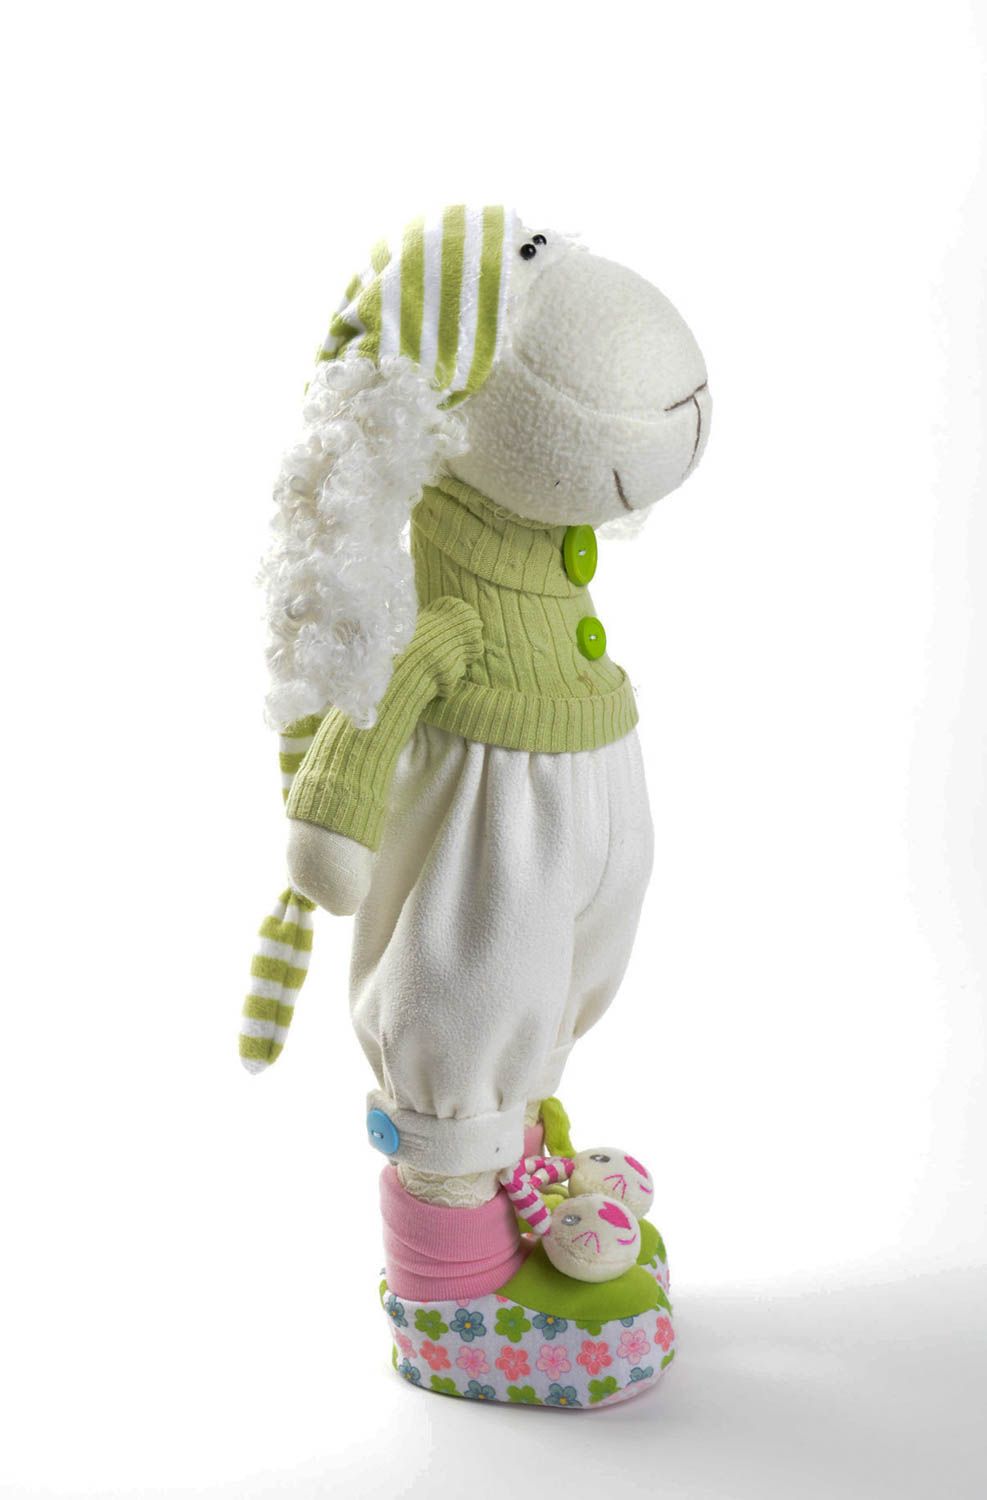 Spielzeug Schaf handmade Stoff Kuscheltier Designer Geschenk Kuschel Tier grell foto 1